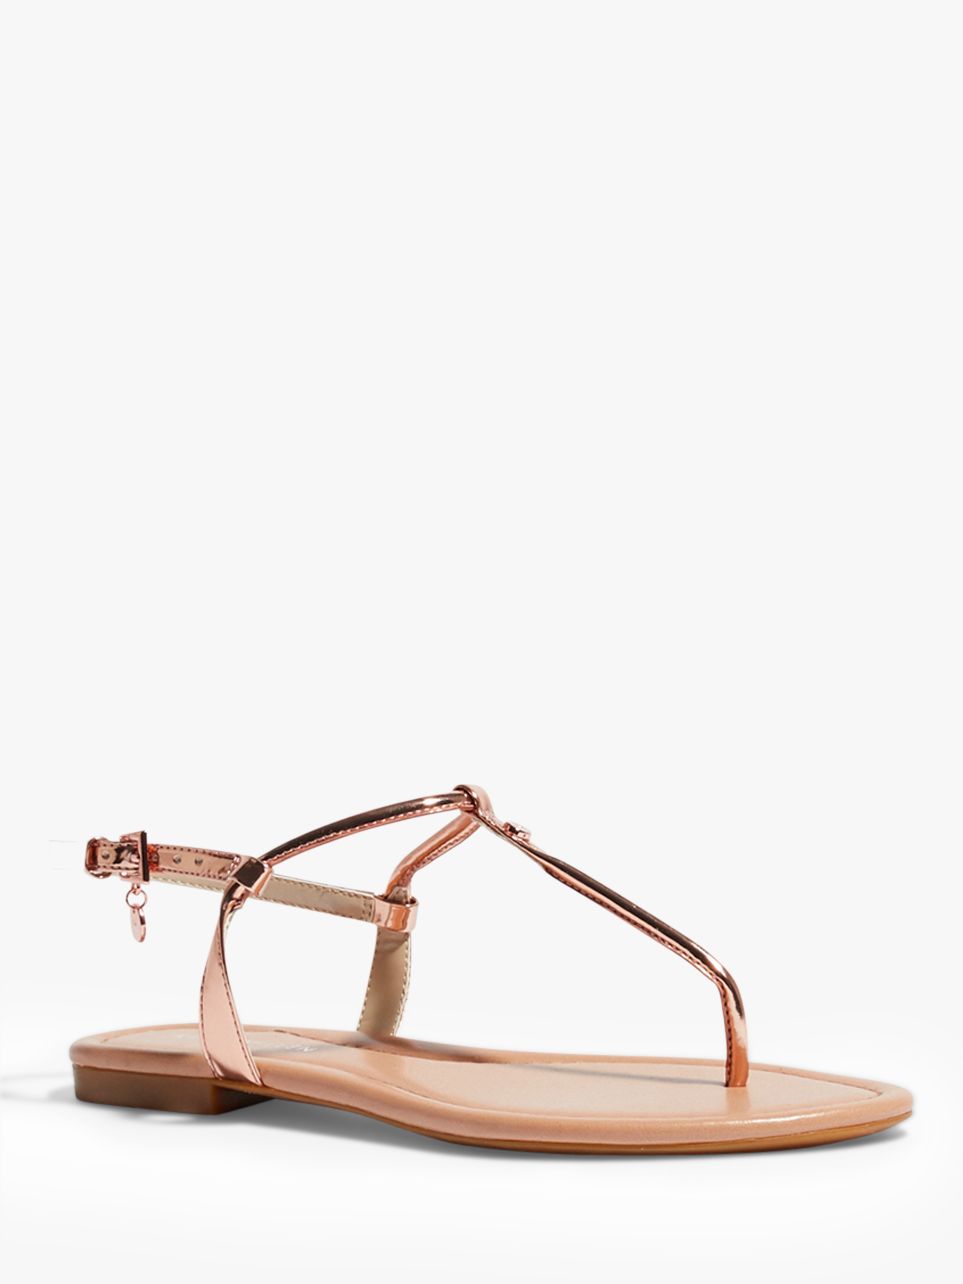 Karen Millen Flat Thong Sandals, Rose Gold